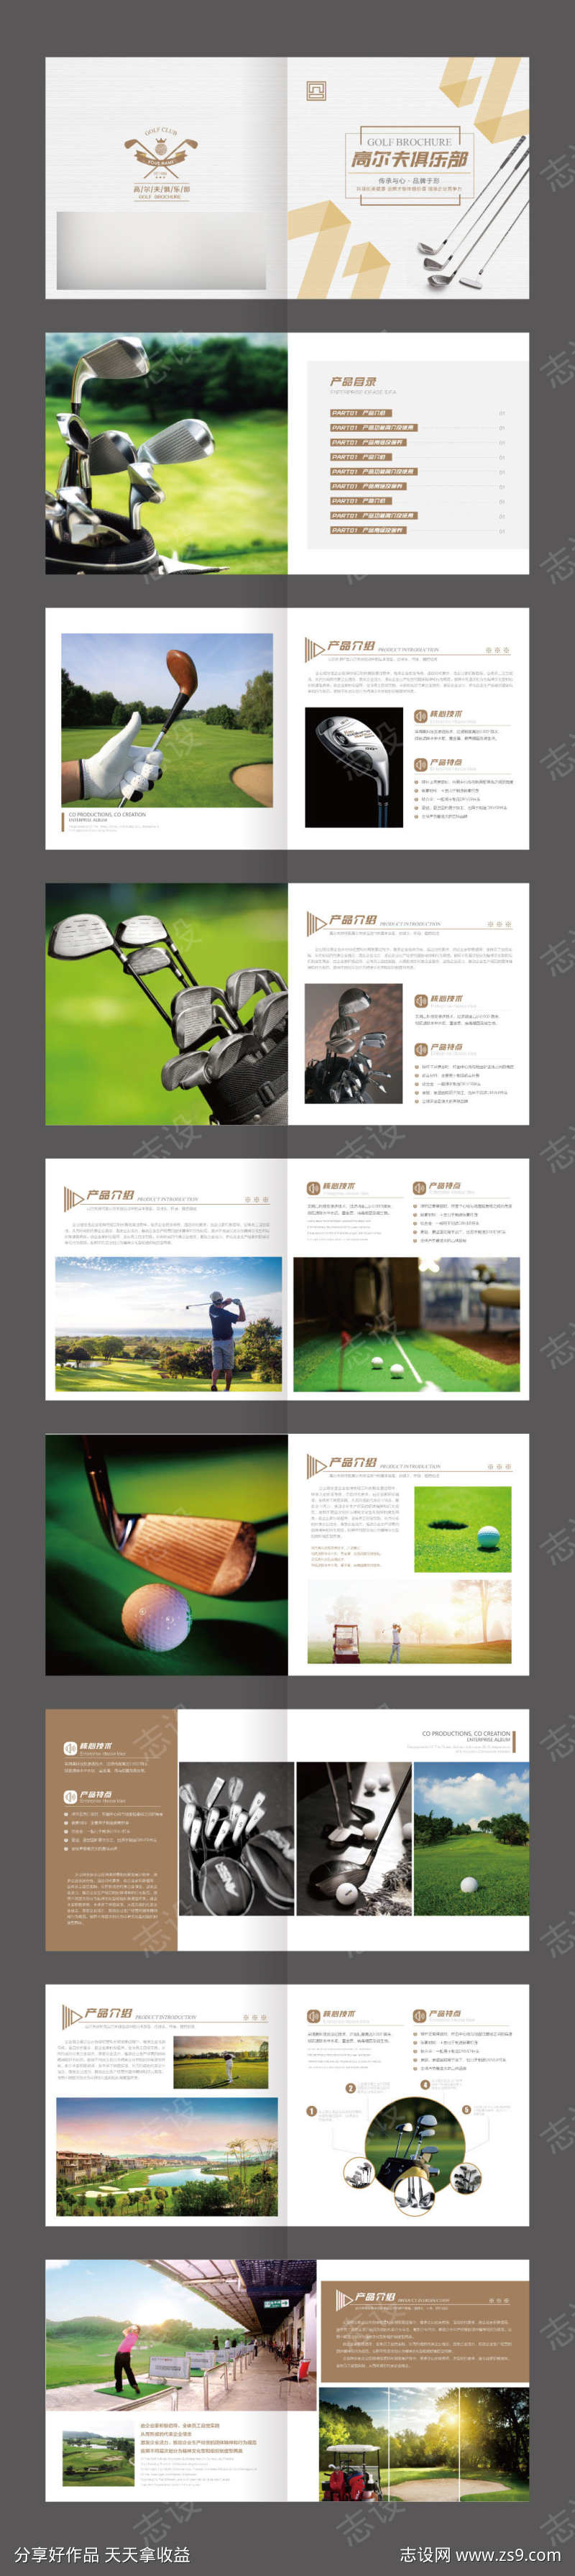 金色高尔夫体验馆高端运动品牌宣传画册